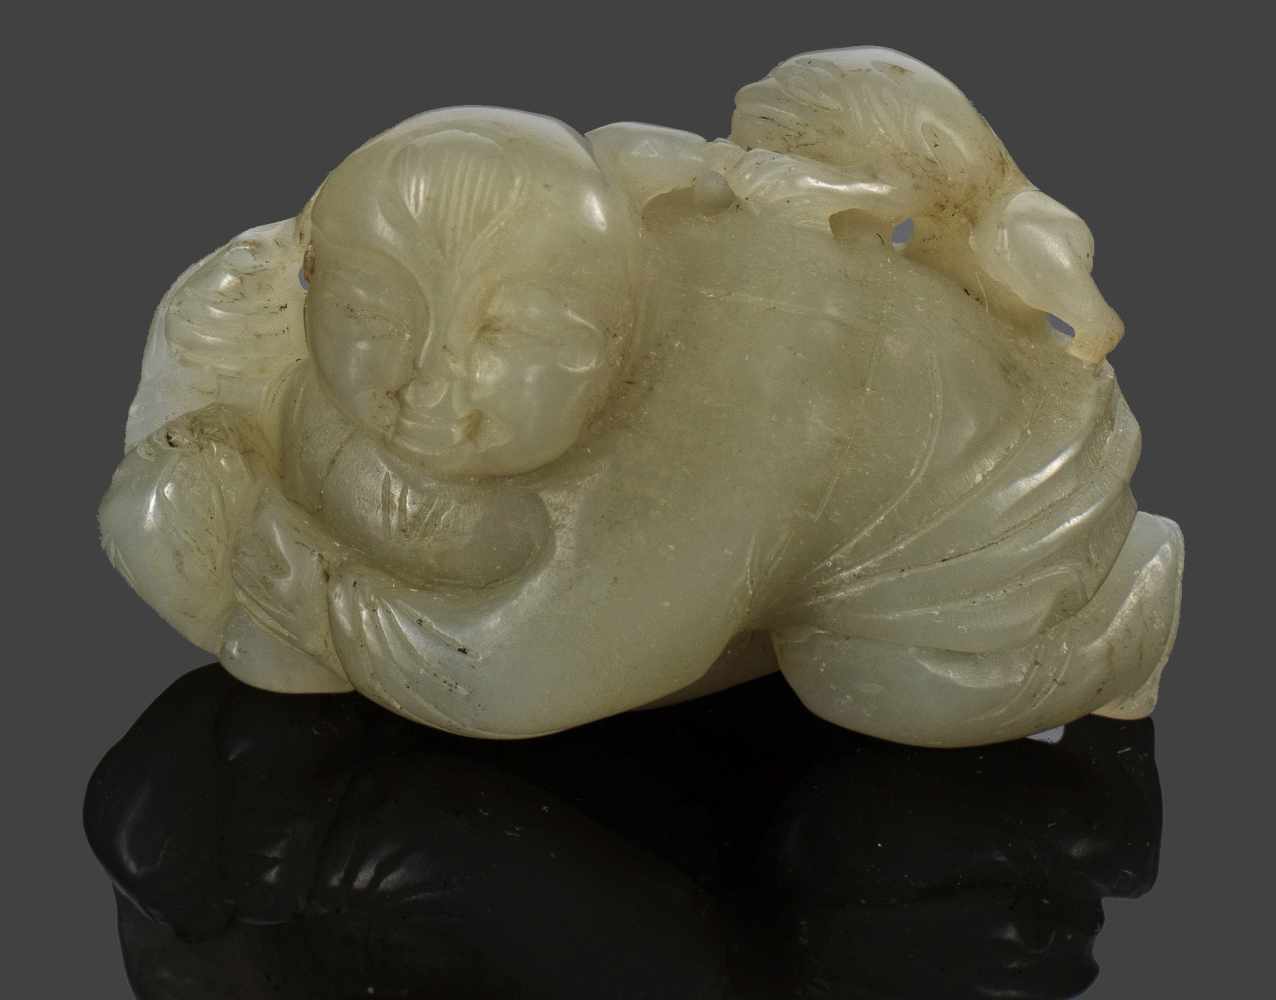 HandschmeichlerWeiß-gräuliche, teilw. gewölkte Nephrit-Jade. Vollplastische, geschnitzte Darstellung